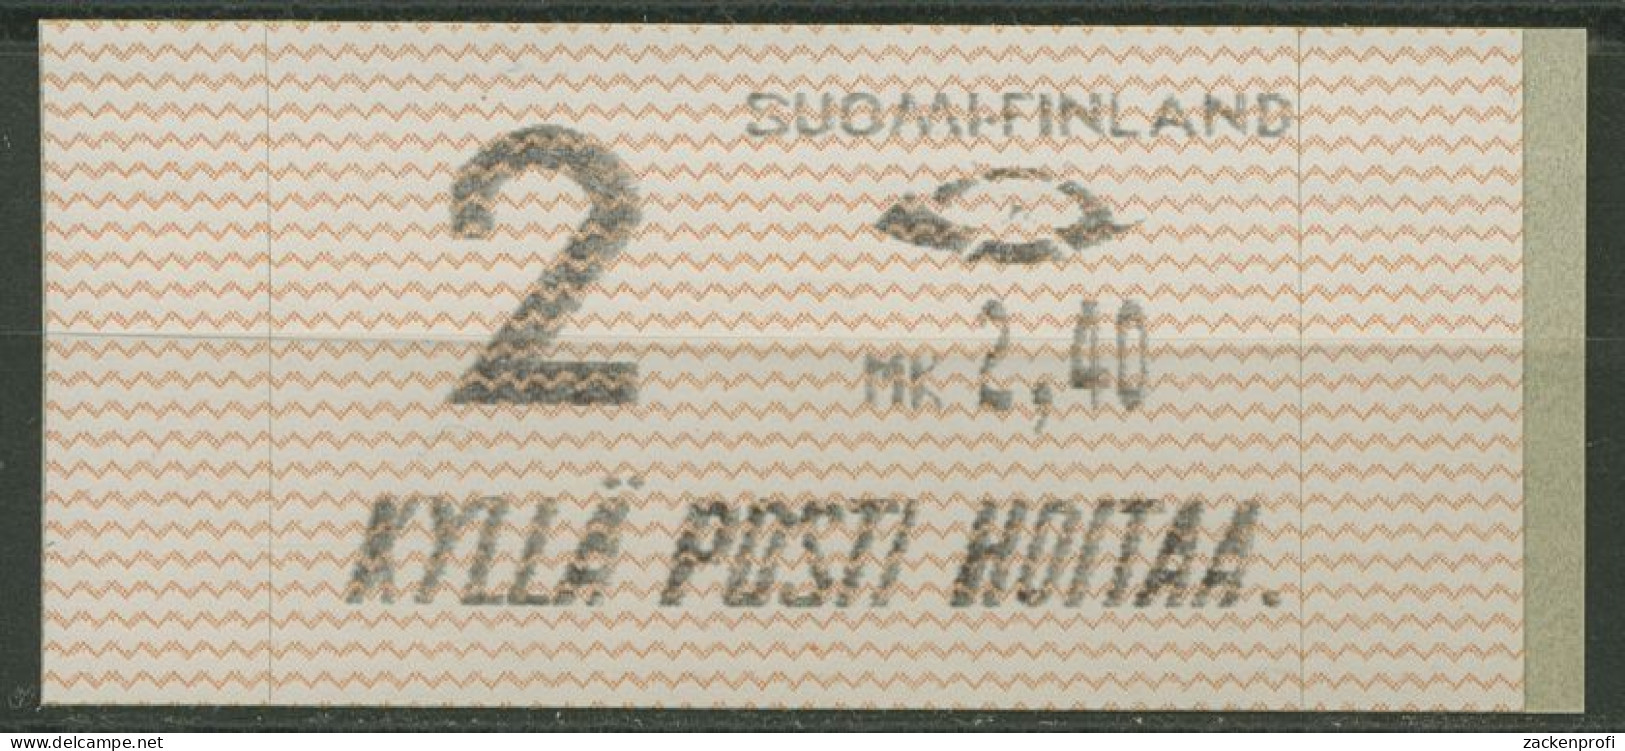 Finnland Automatenmarken 1991 MK 2,40 Einzelwert, ATM 10.1 Z2 Postfrisch - Automaatzegels [ATM]